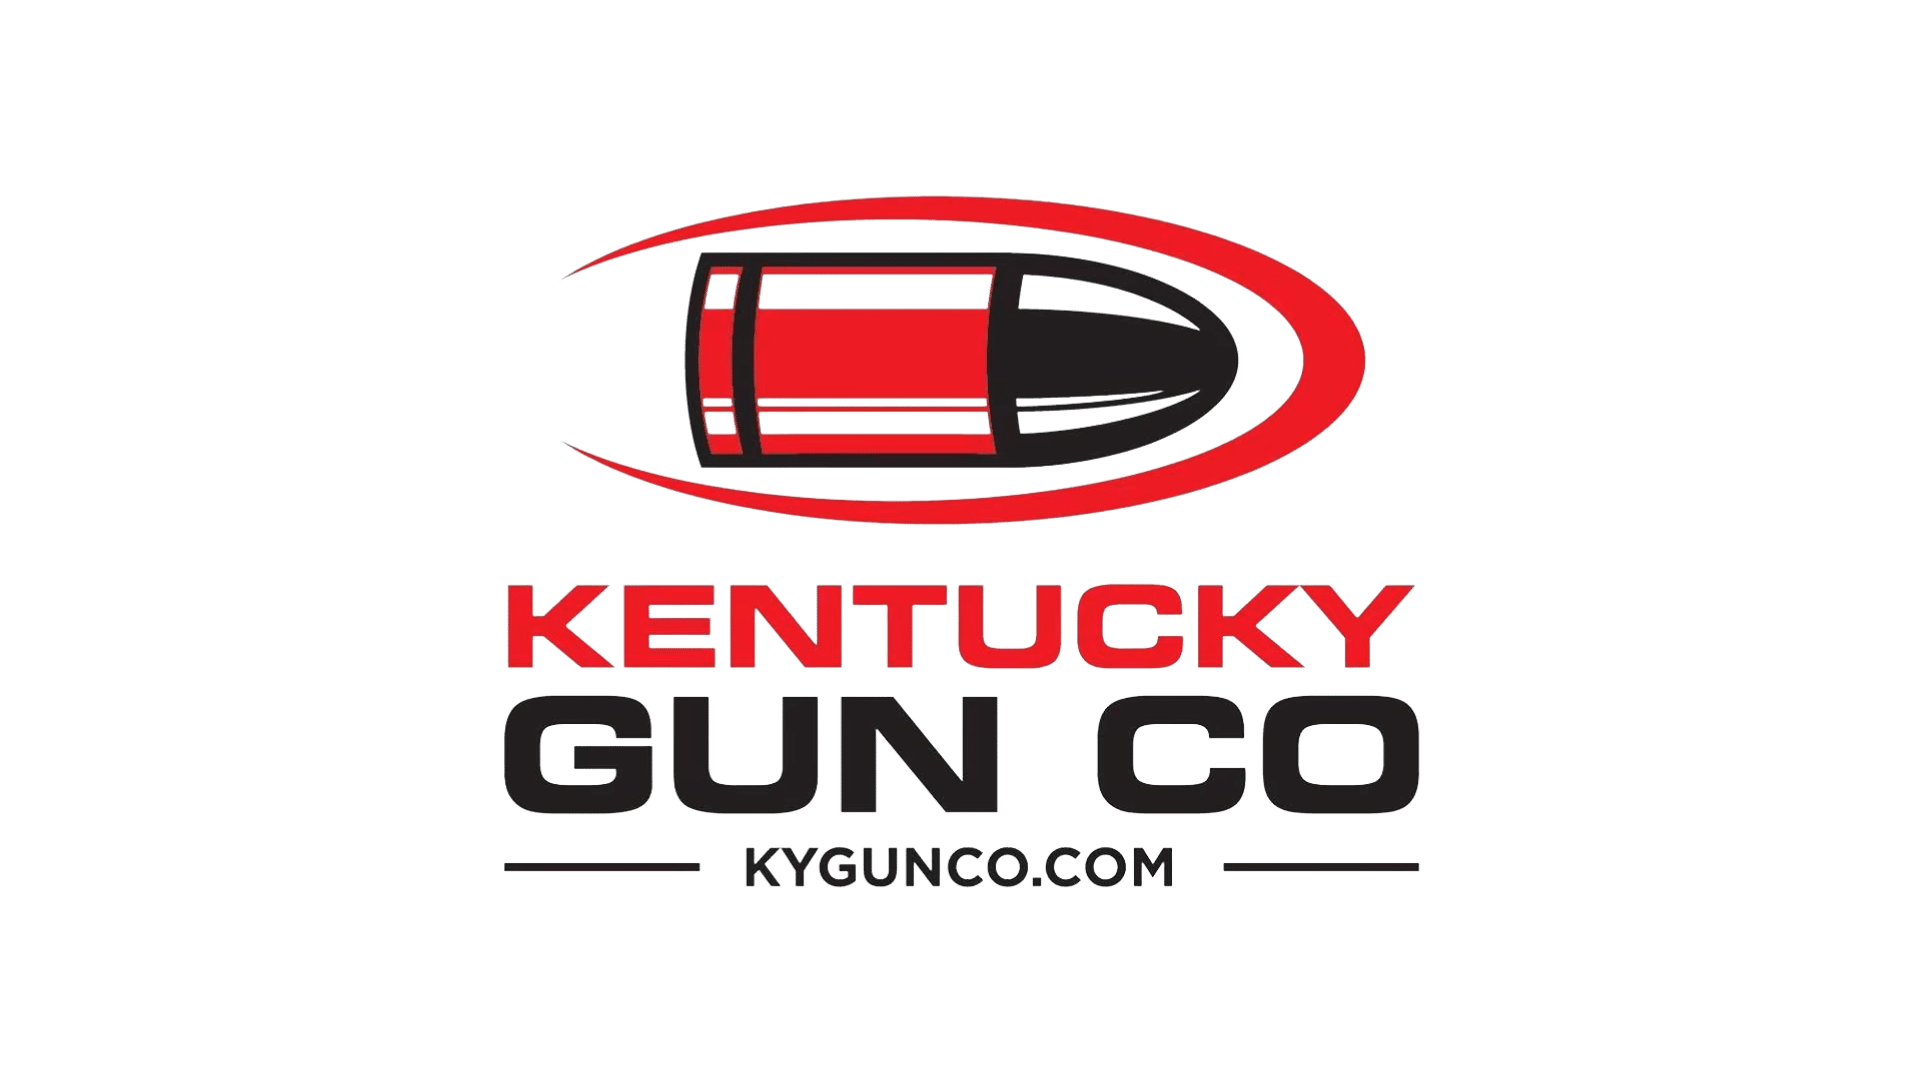 Kentucky Gun Co logo